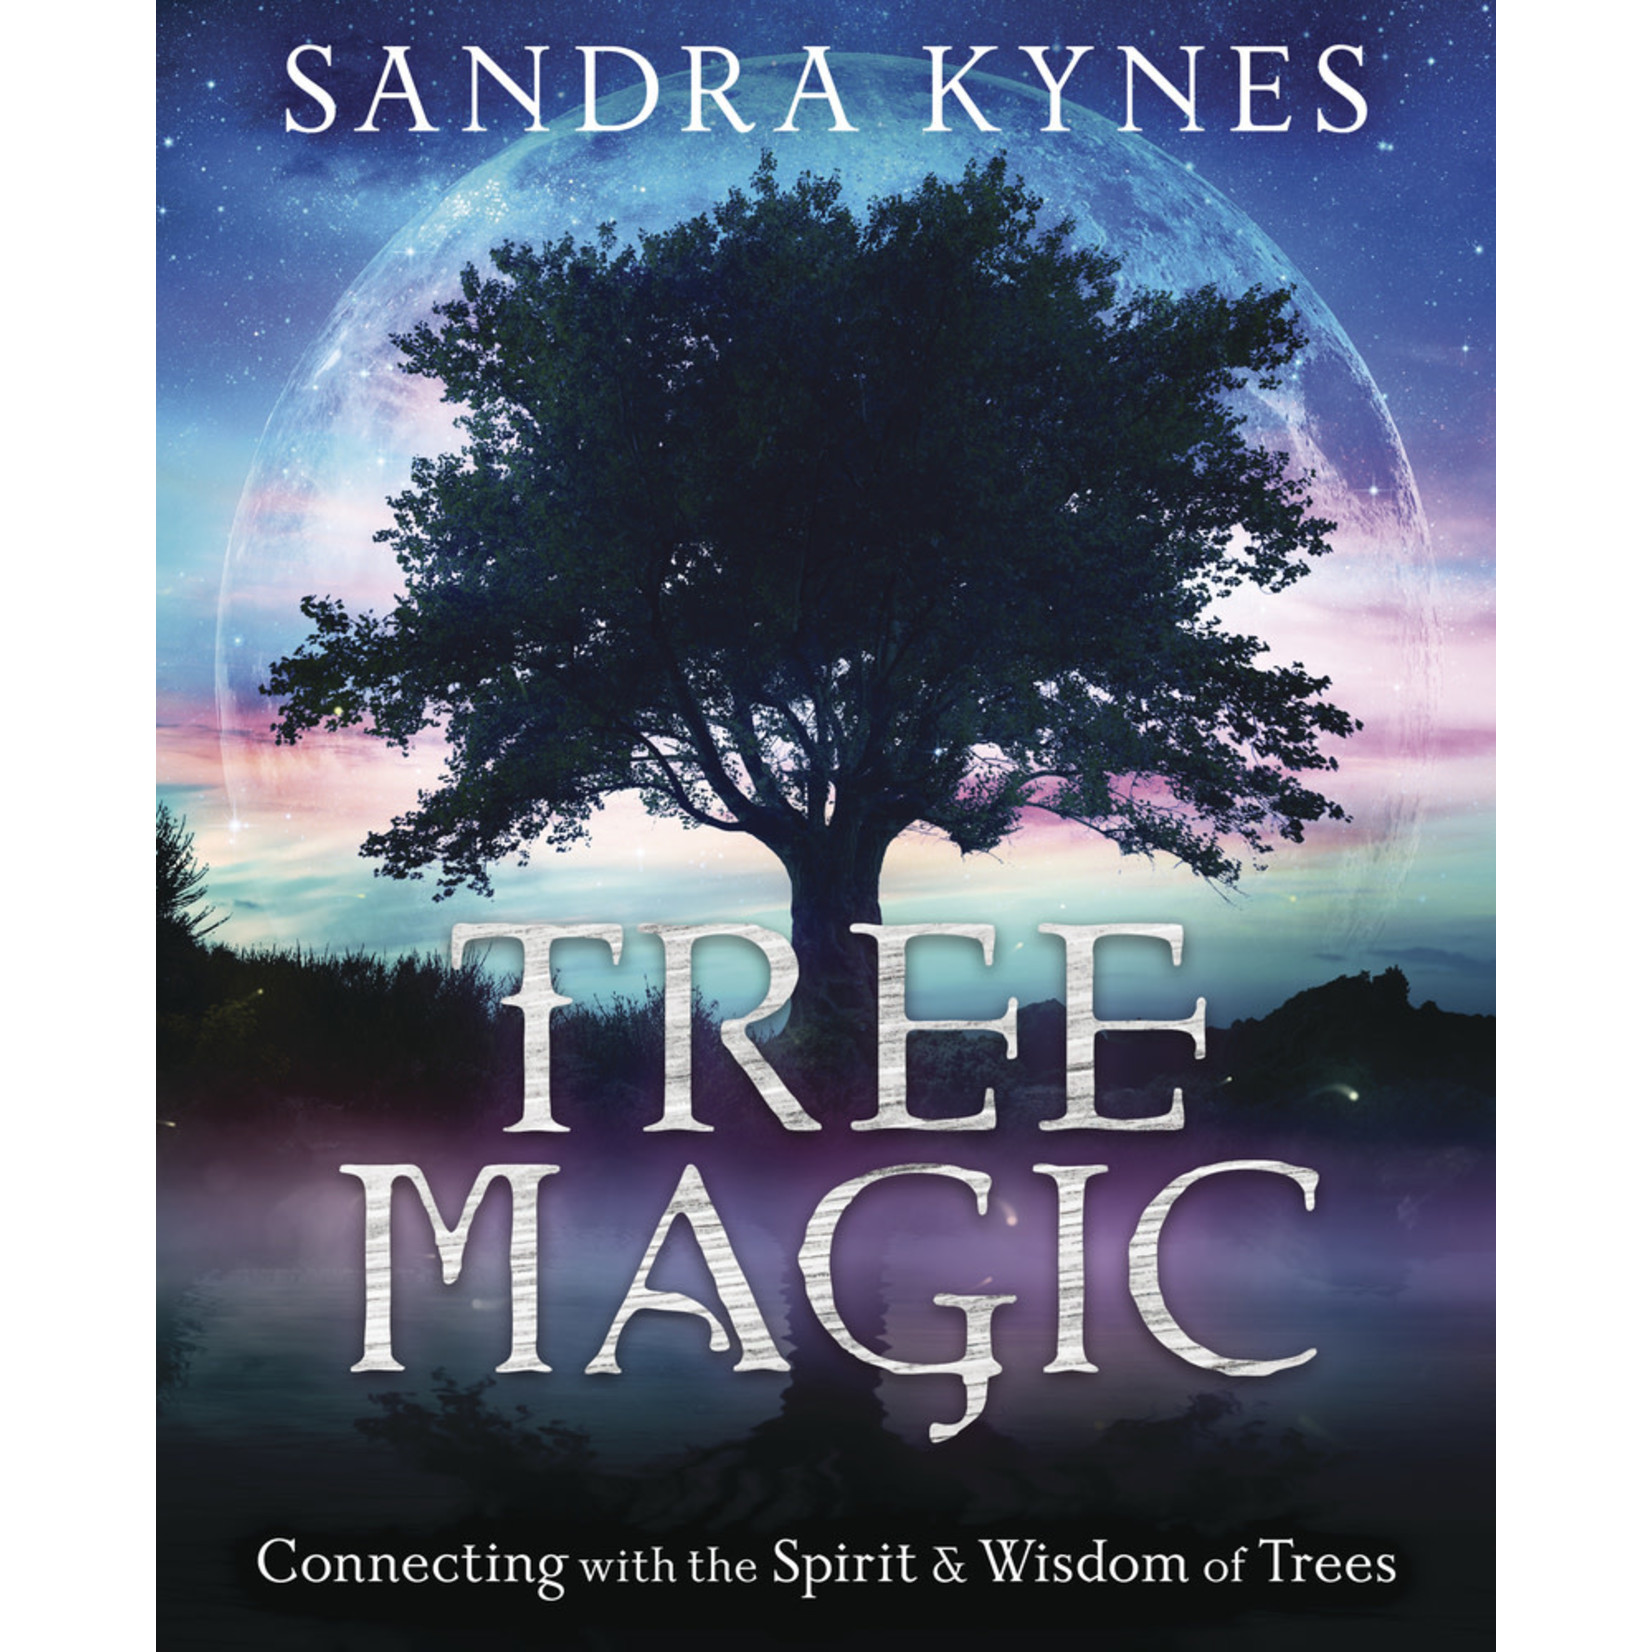 Tree Magic by Sandra Kynes